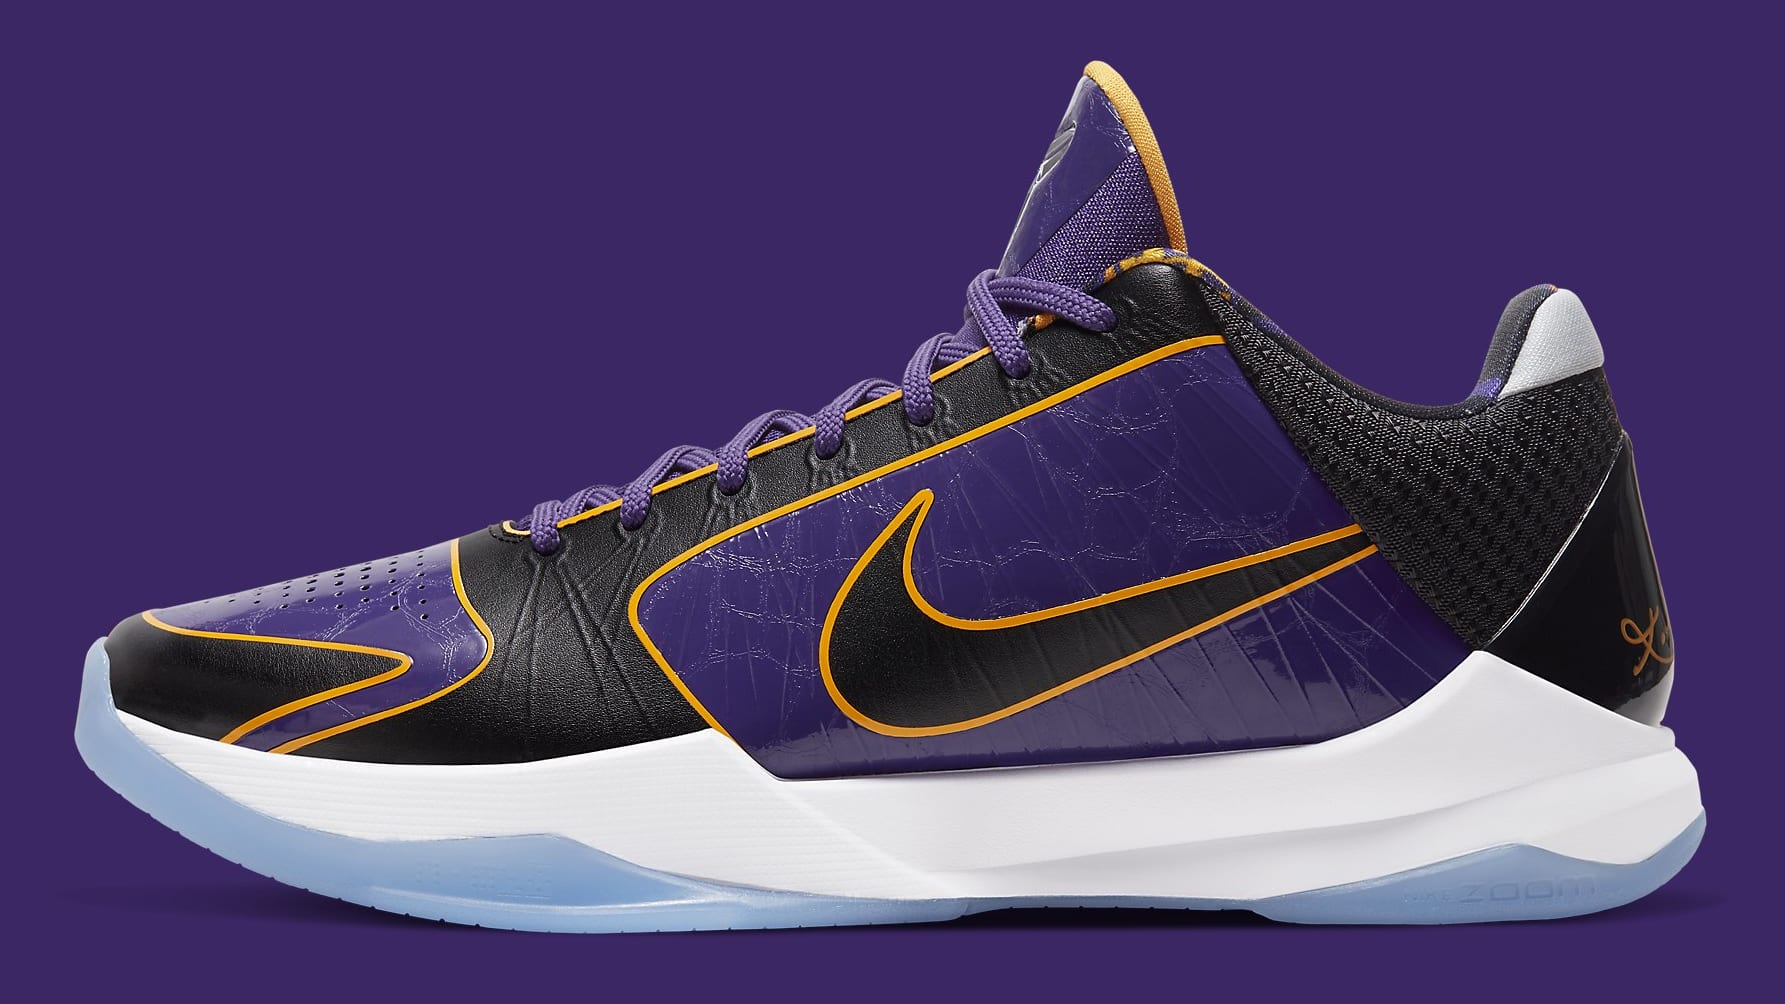 Nike Kobe 5 Protro Lakers Release Date CD4991-500 Profile